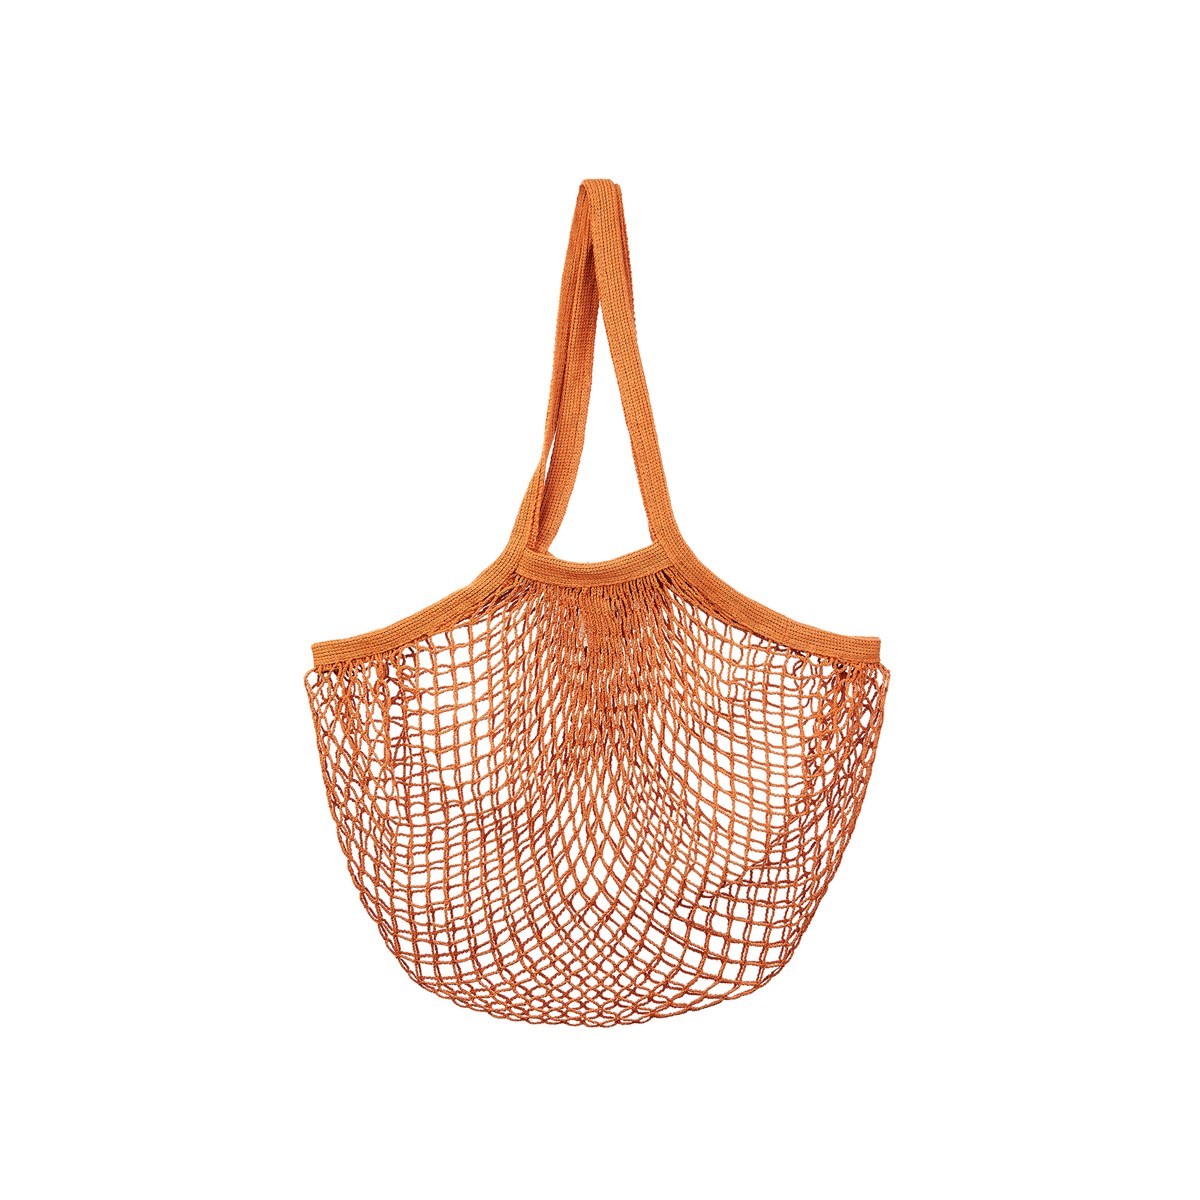 Burnt Orange String Shopping Bag - Sass & Belle